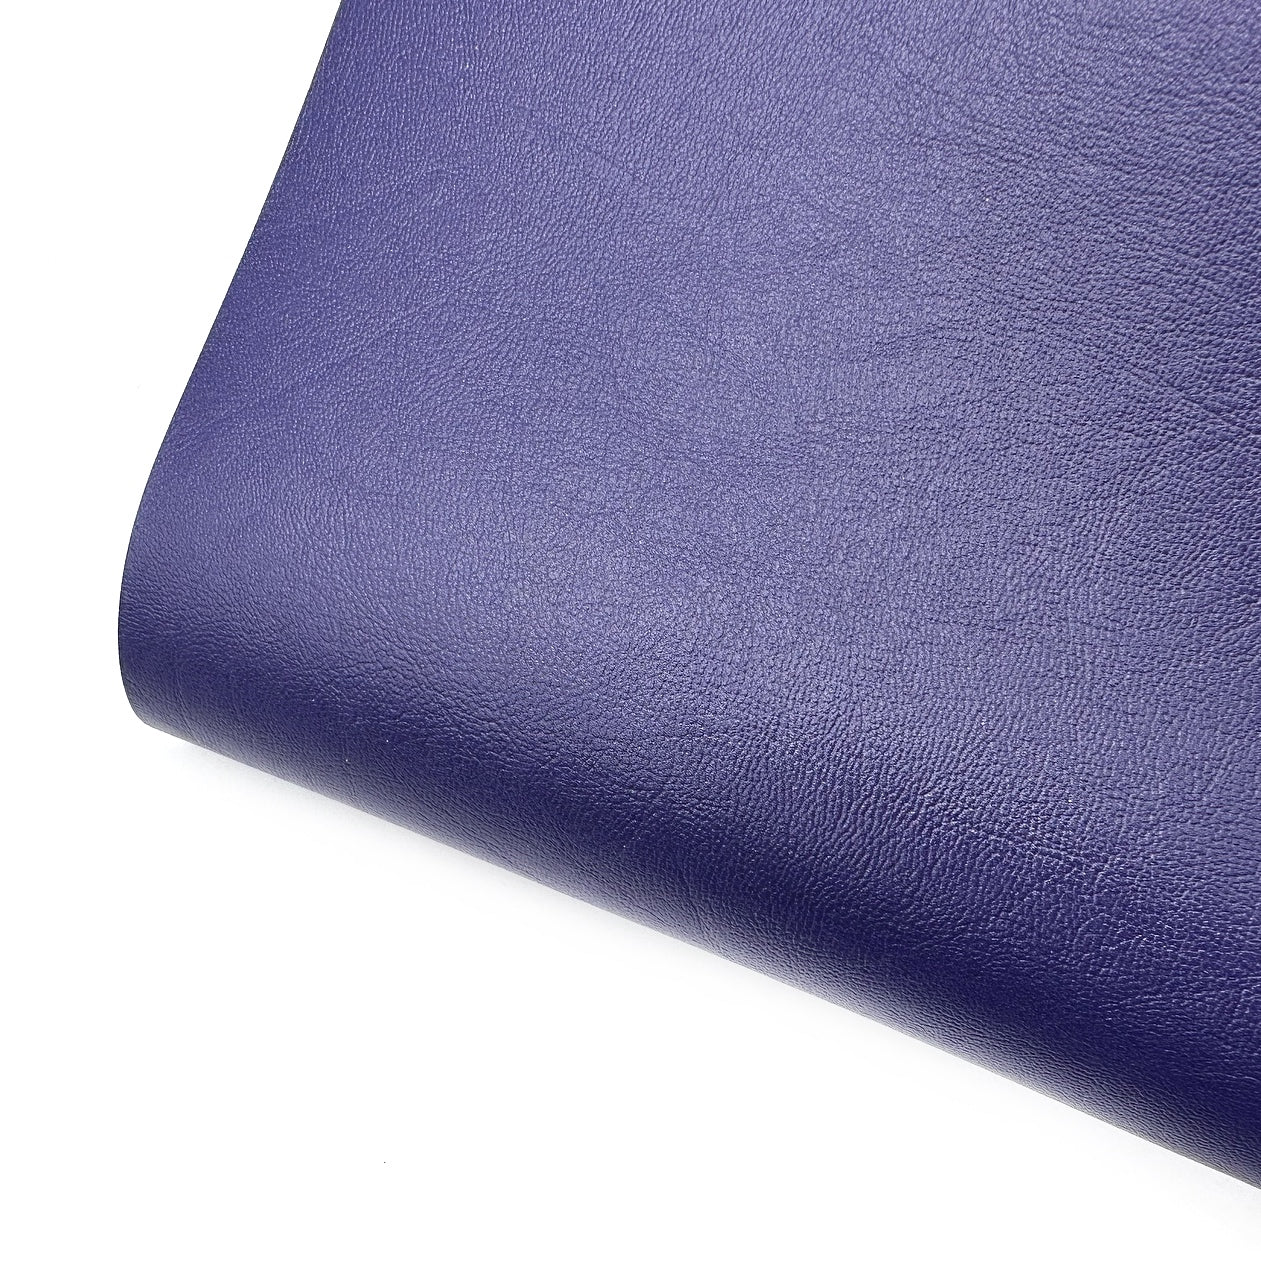 Soft Navy Core Colour Premium Faux Leather Fabric